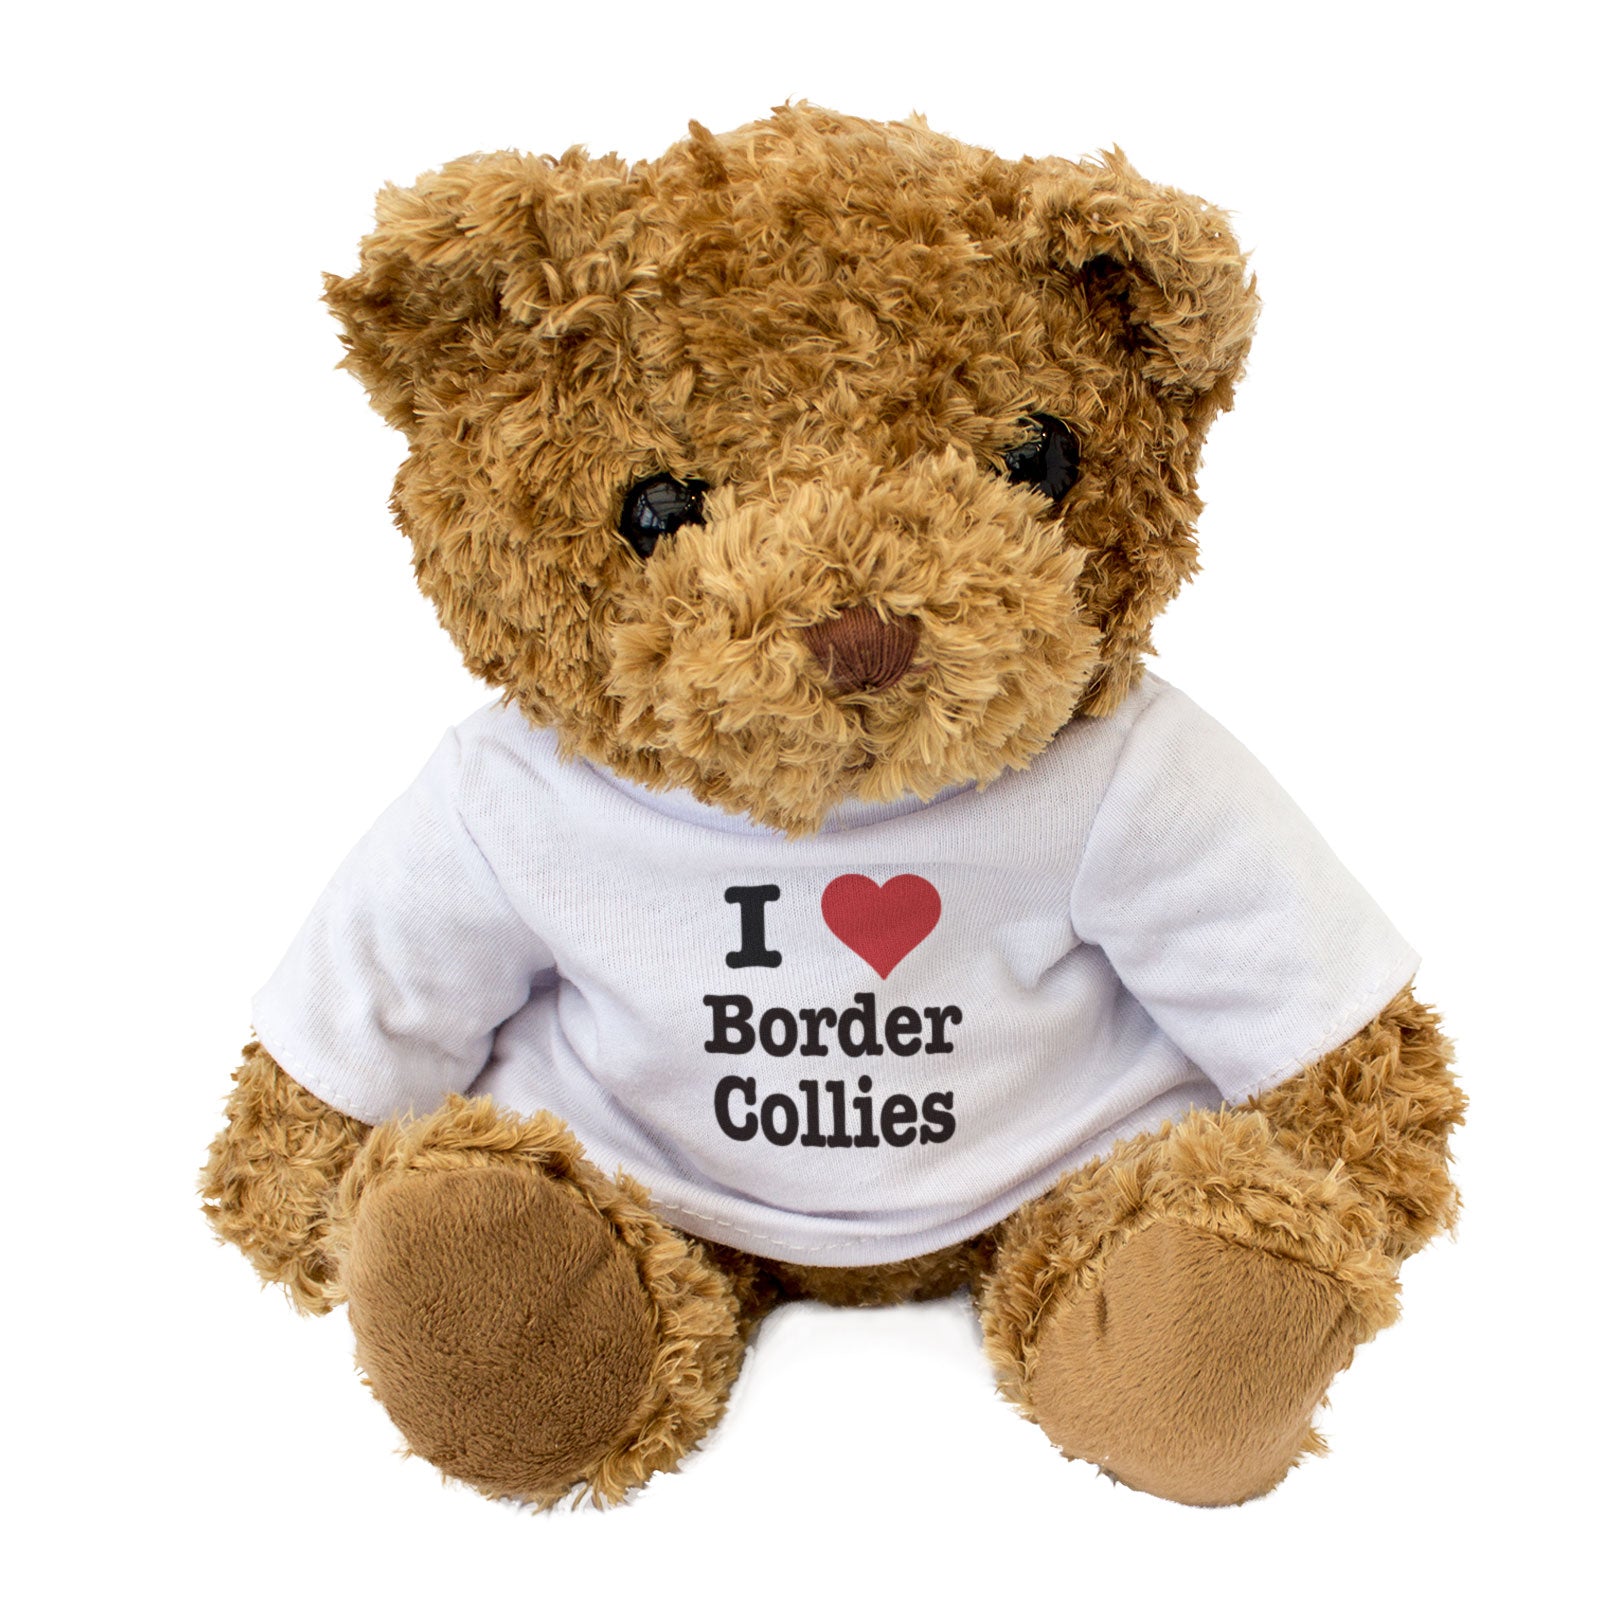 I Love Border Collies - Teddy Bear